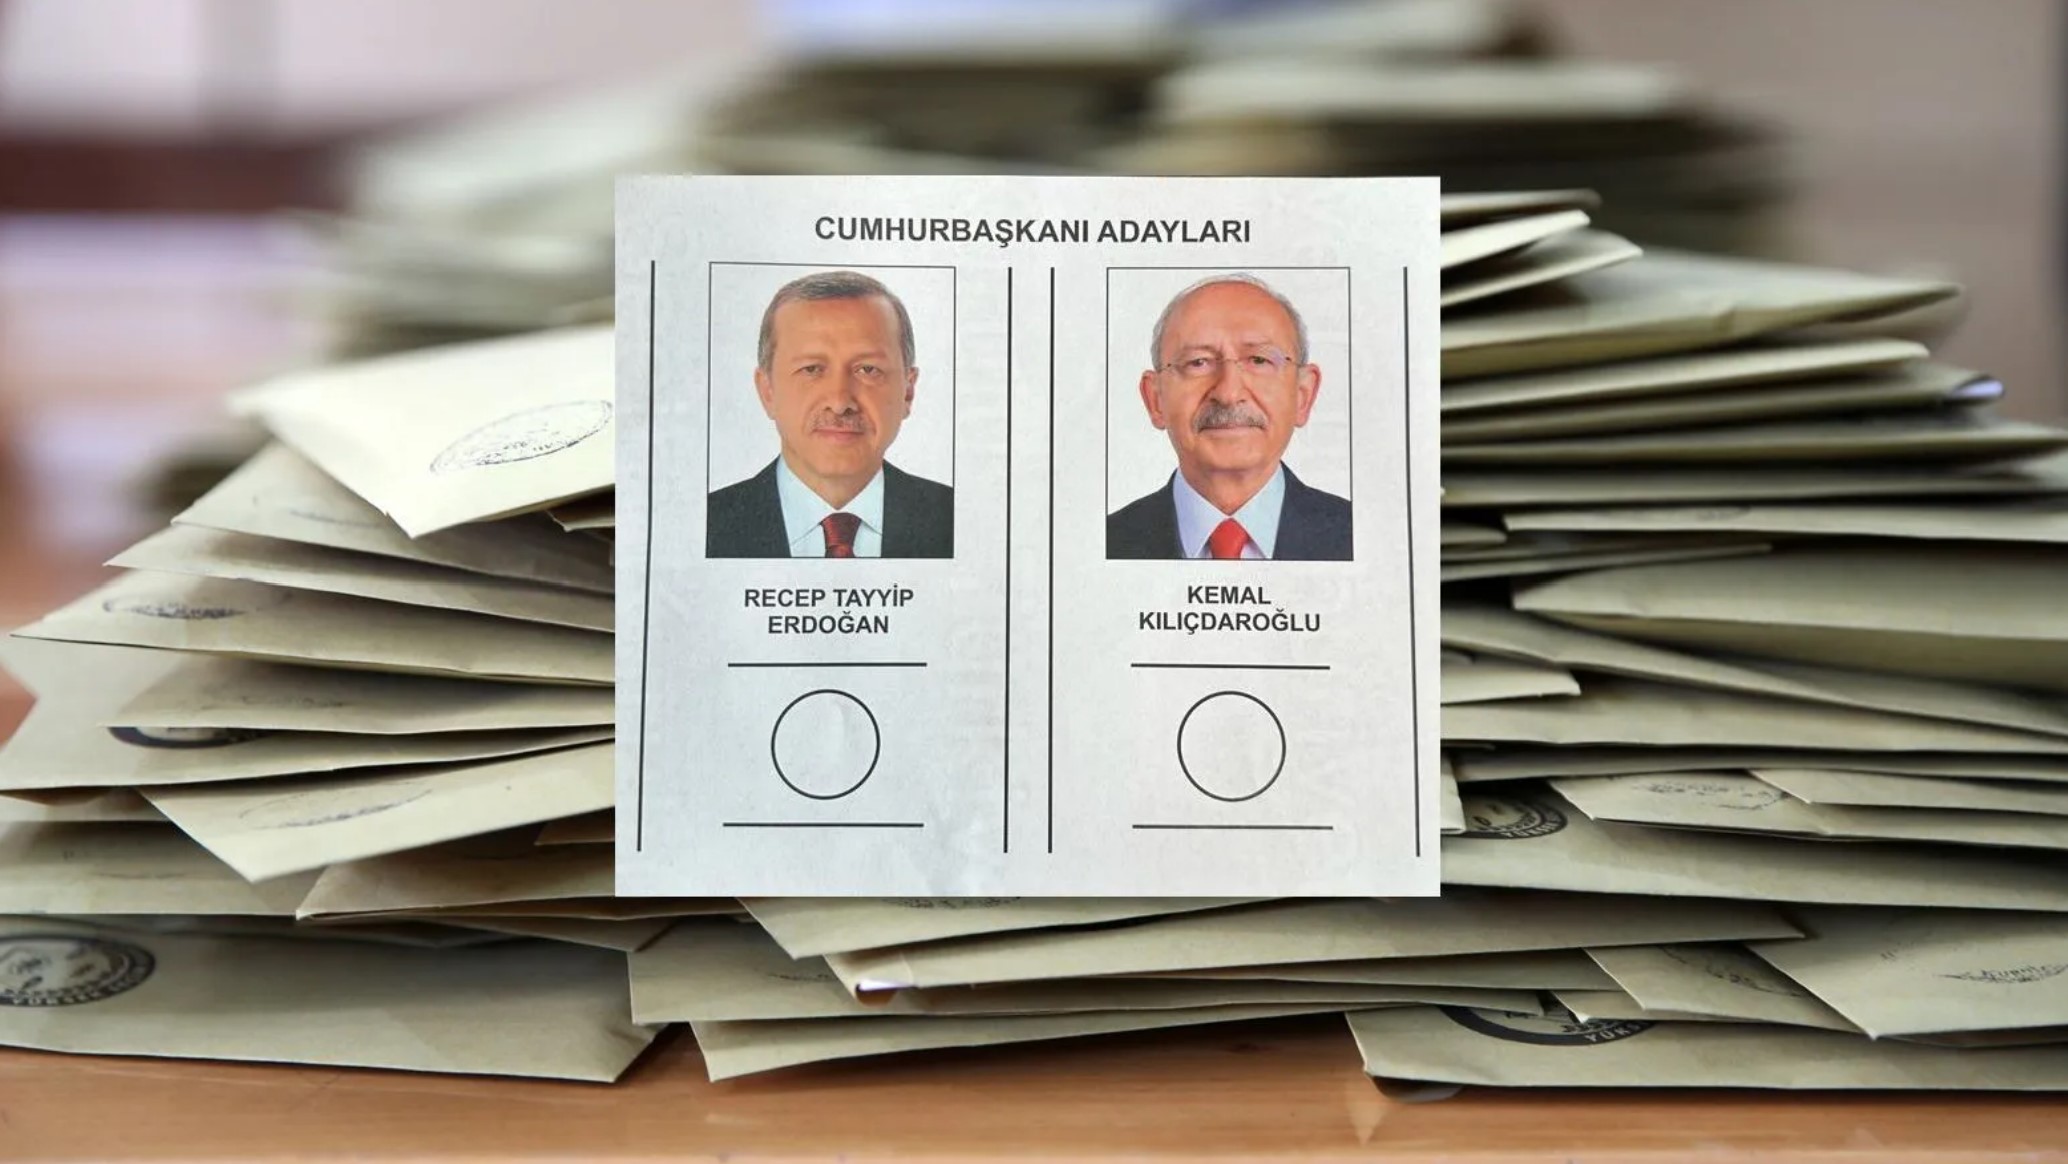 تصويت "قياسي" في الخارج بالجولة الثانية للانتخابات الرئاسية التركية